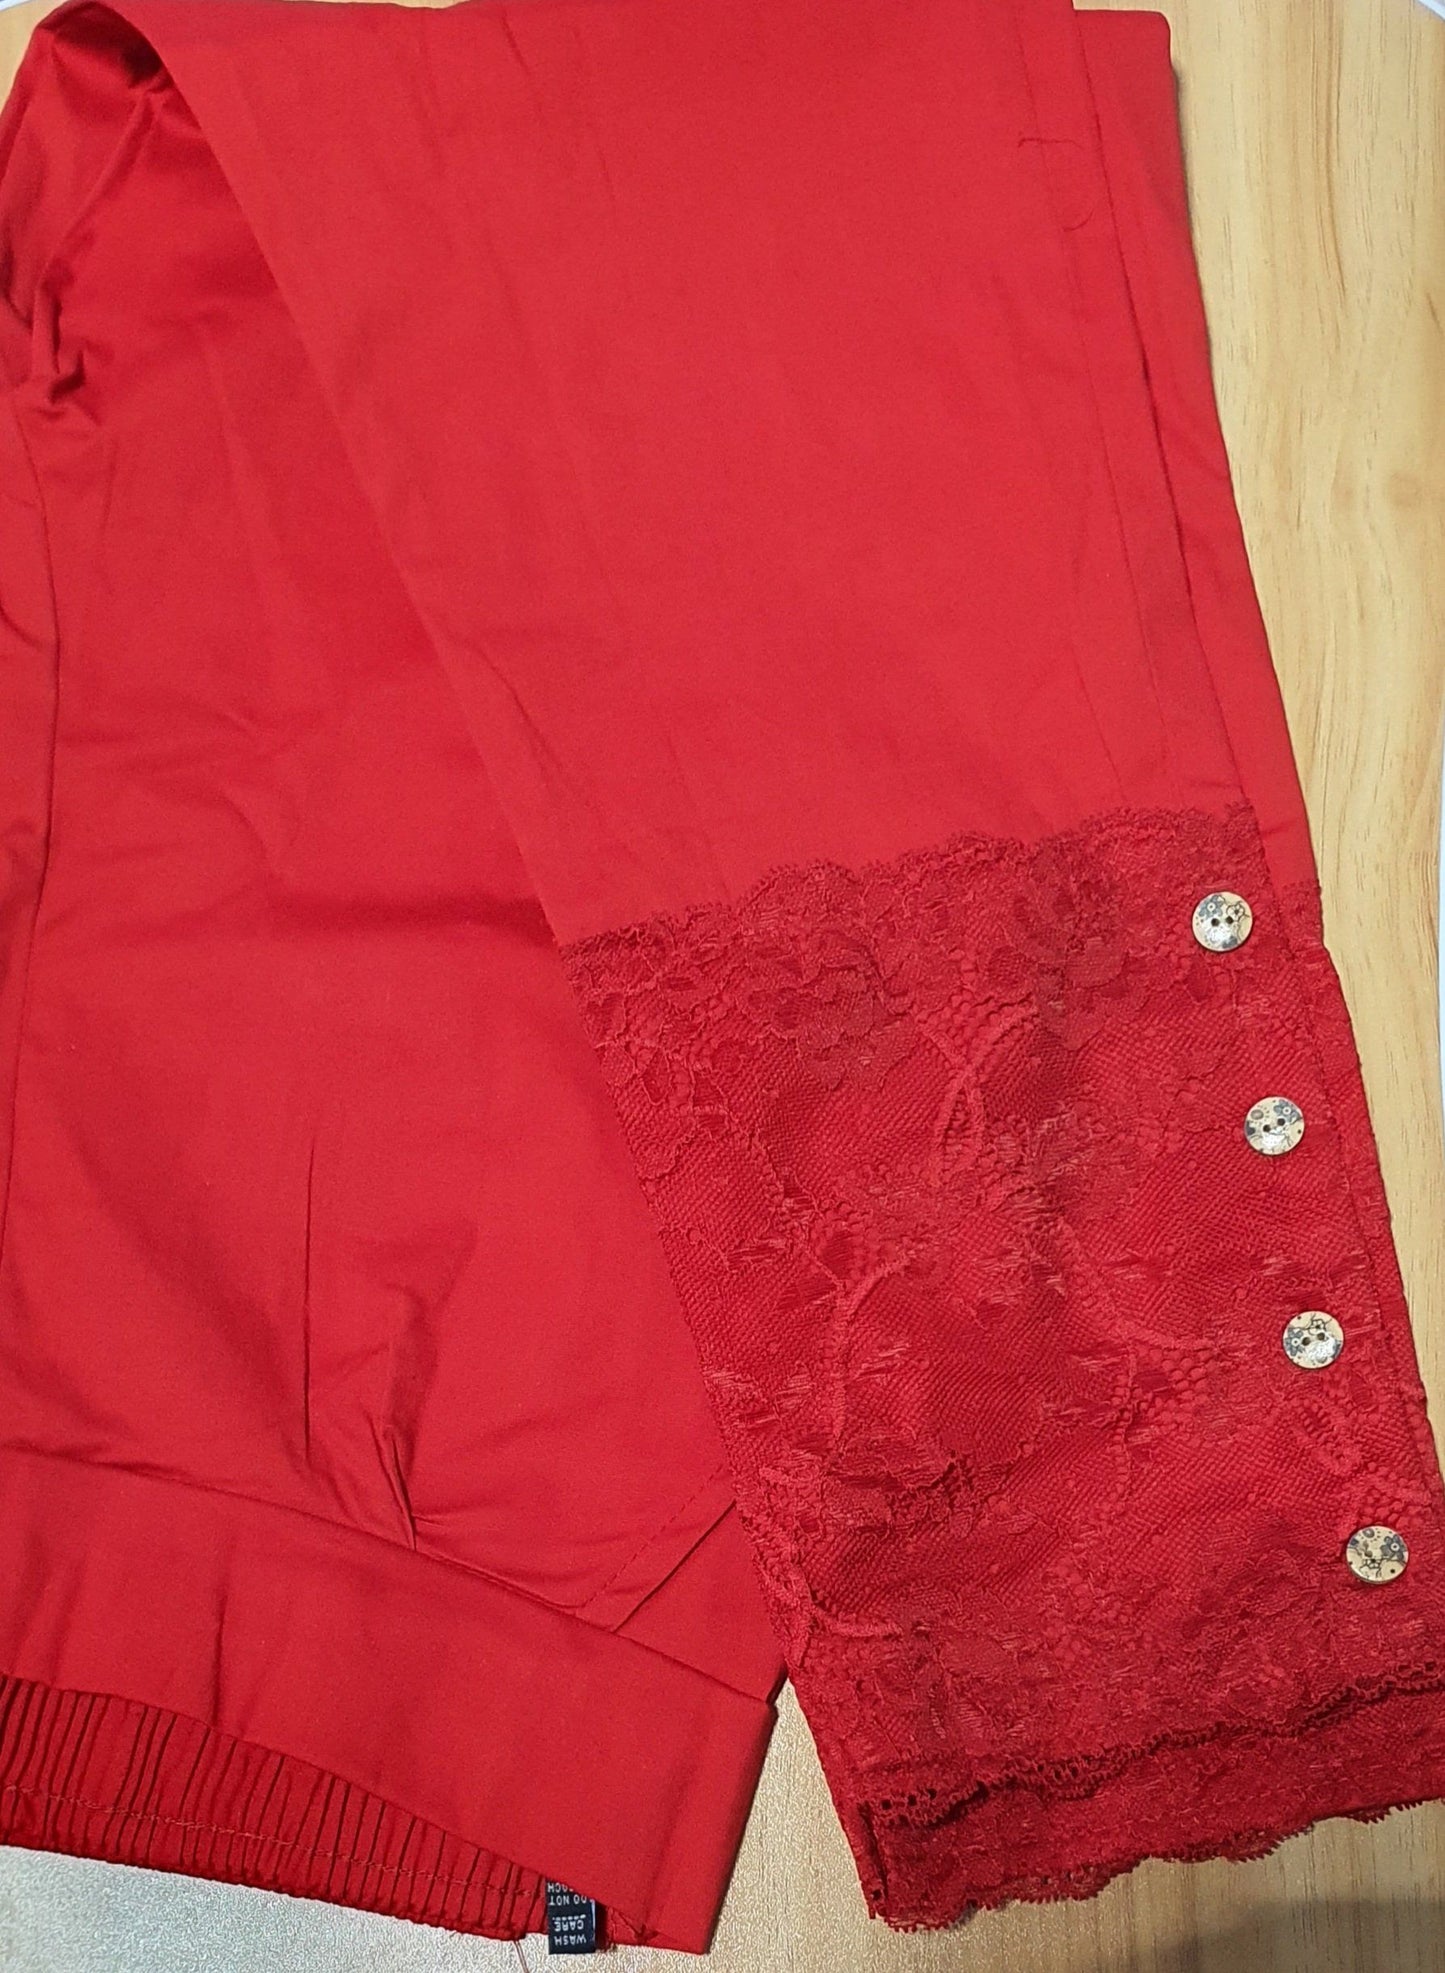 Designer Lace Cotton Lycra Pants in 5 colors Cotton Lycra Pants Shopindiapparels.com Red 